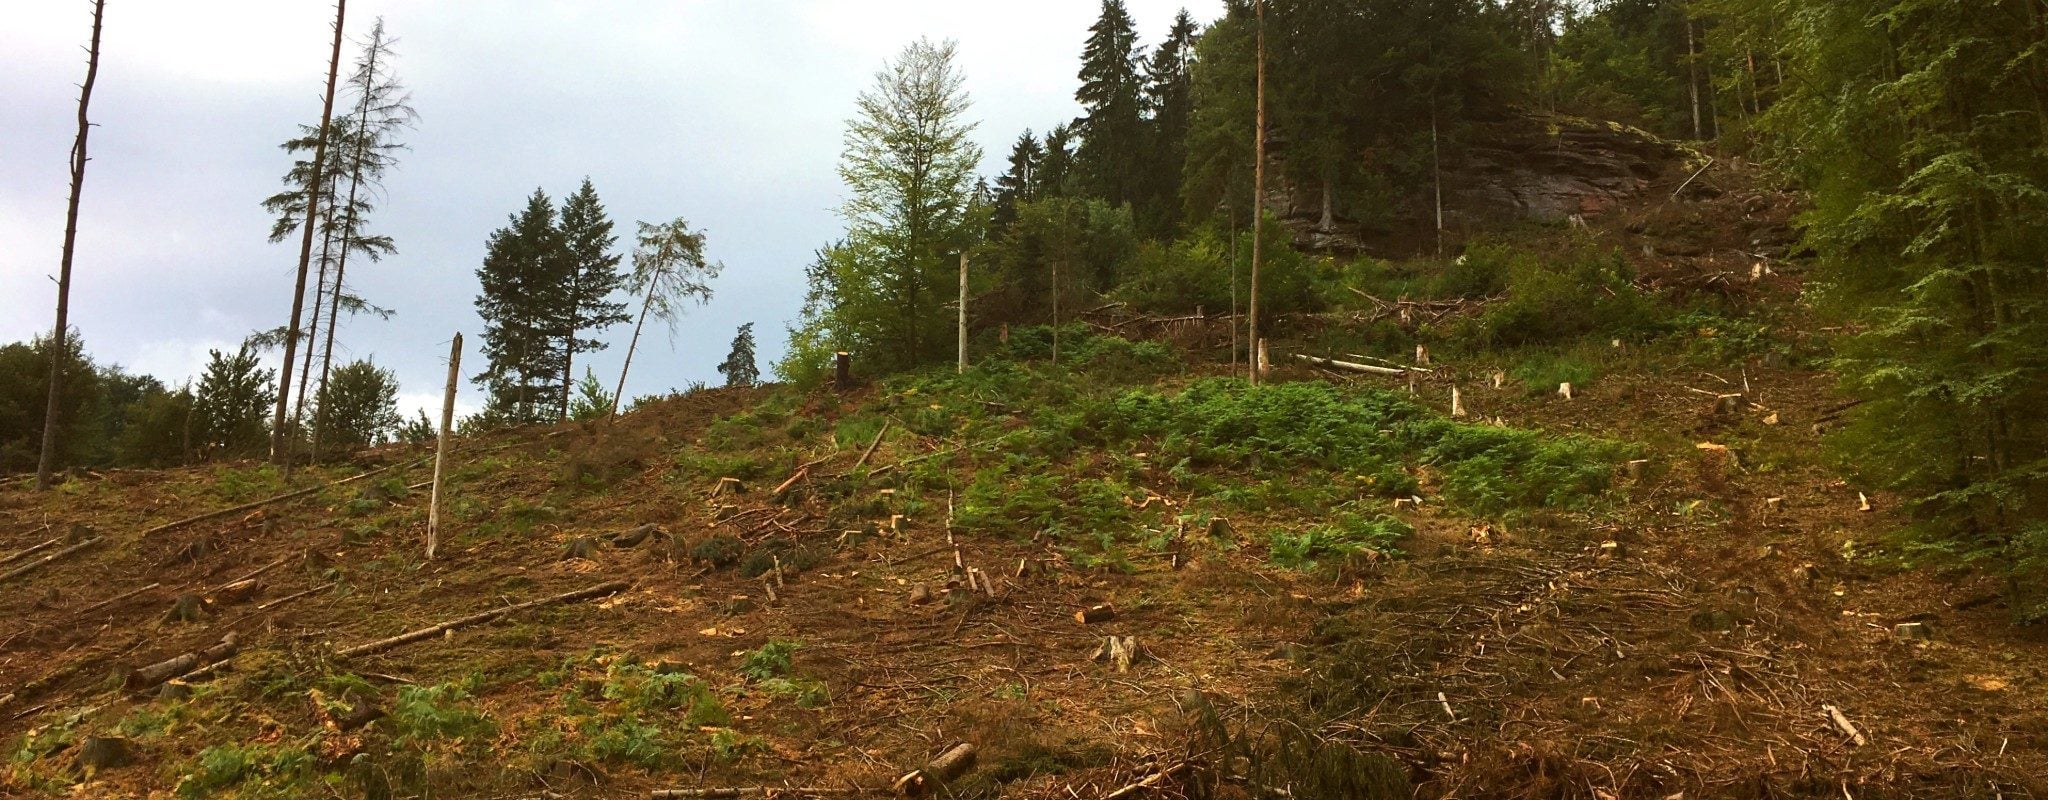 Trafic de bois : l’État ferme les yeux sur le pillage des forêts publiques françaises